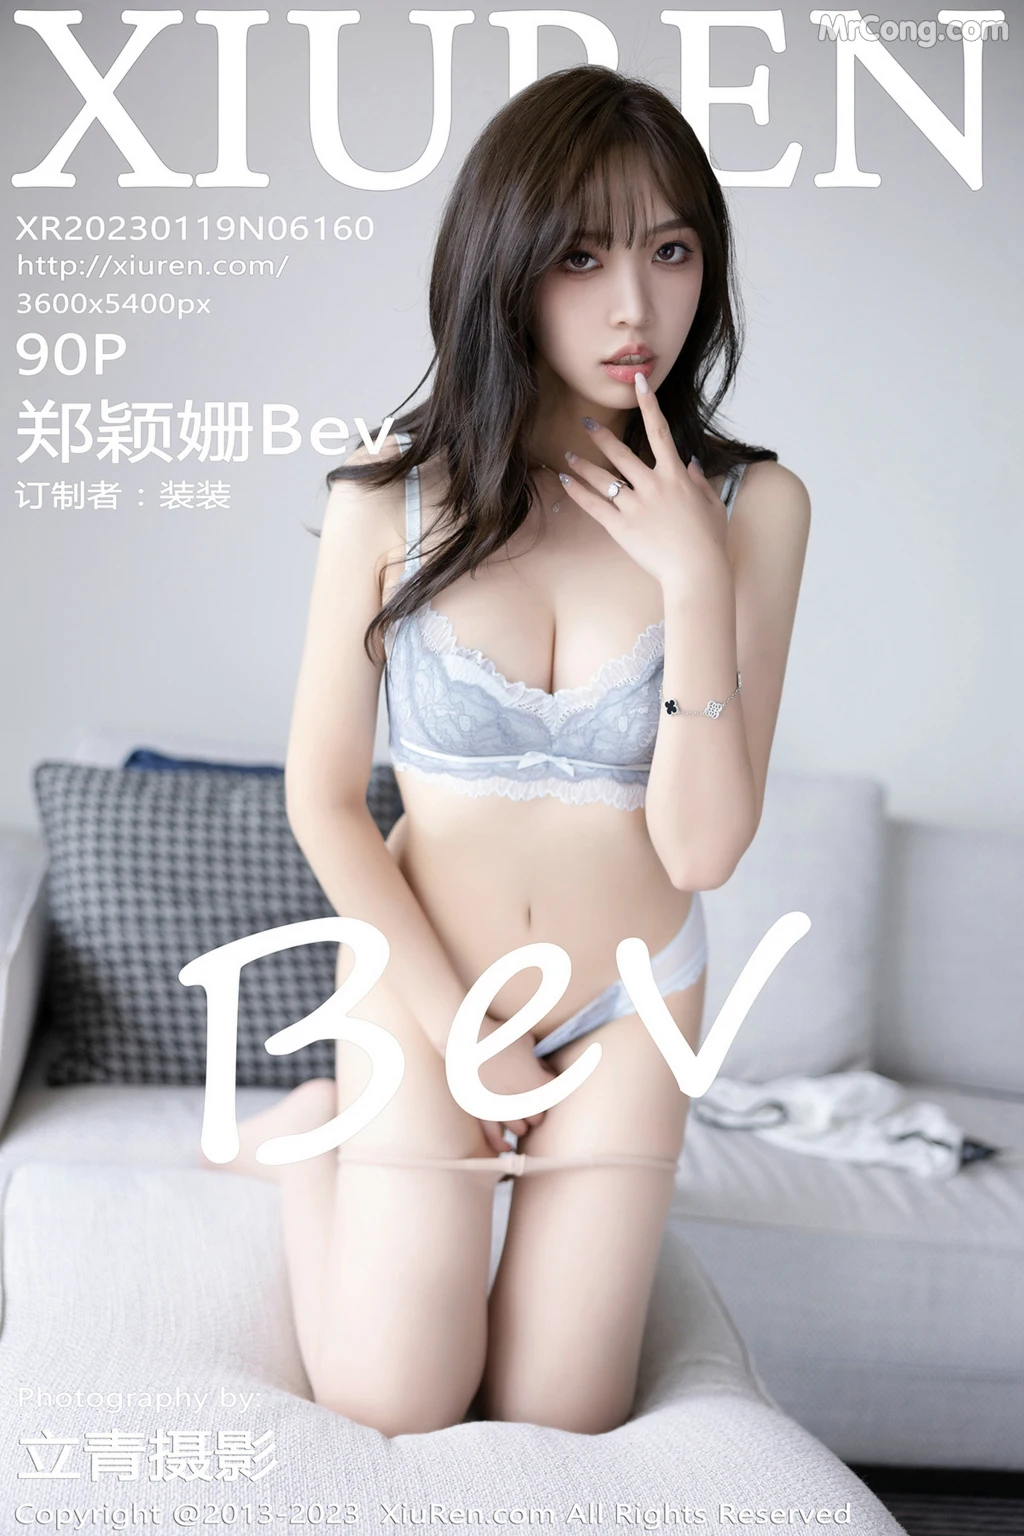 XIUREN No.6160: Zheng Ying Shan (郑颖姗Bev) (91 photos)